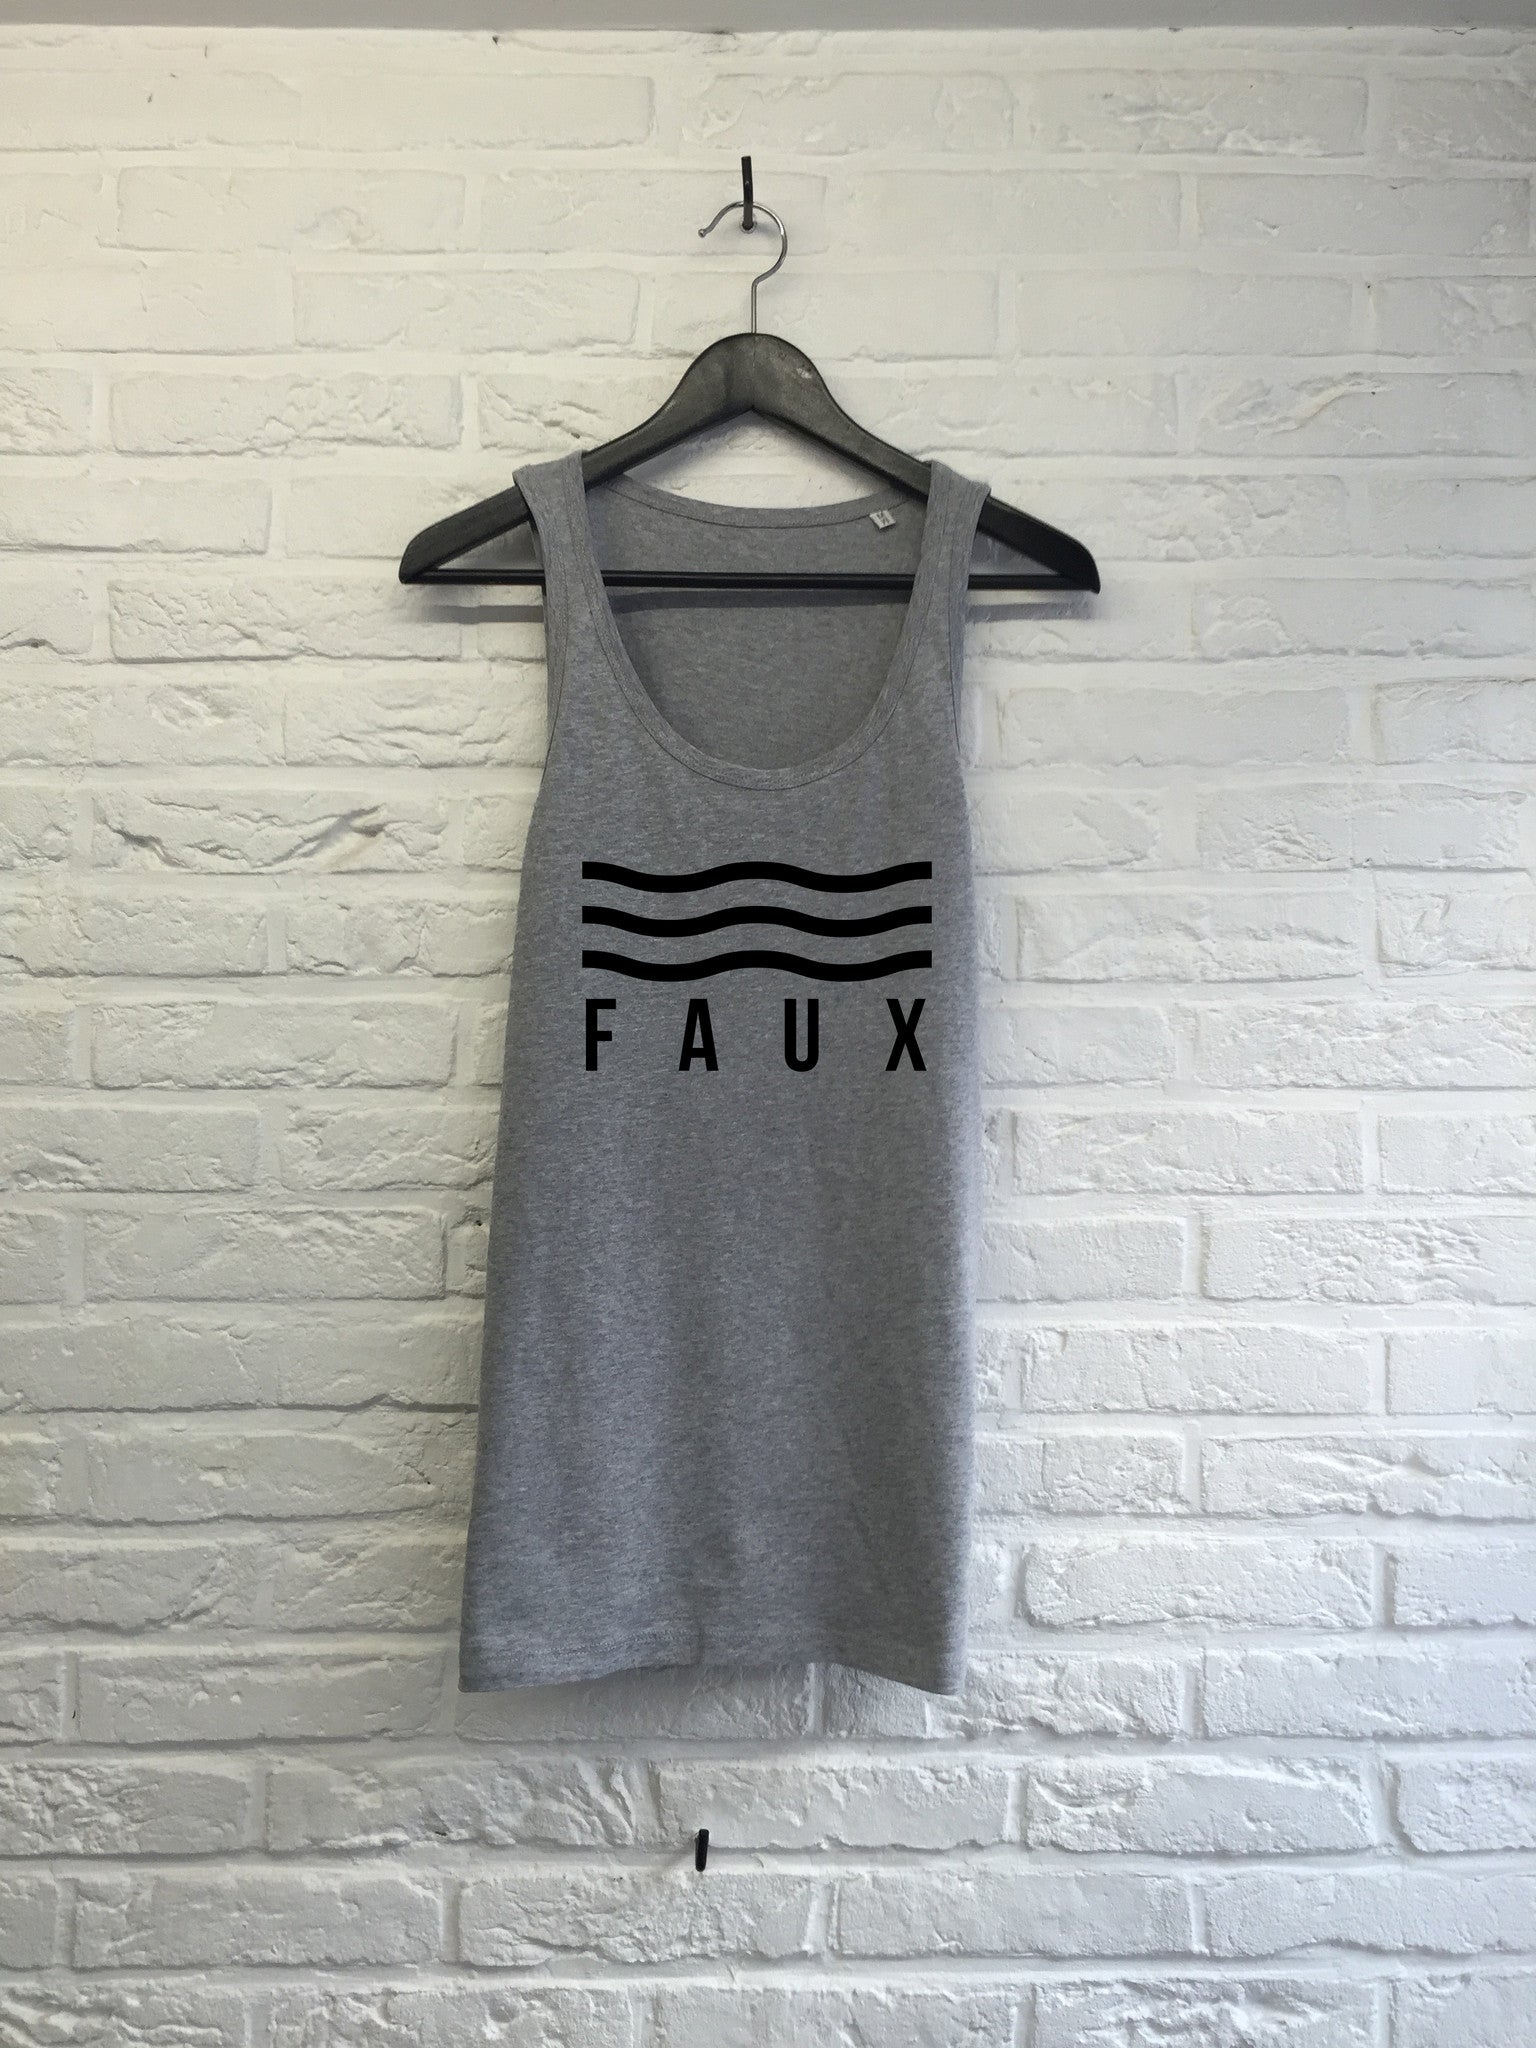 FAUX vagues - Débardeur-T shirt-Atelier Amelot